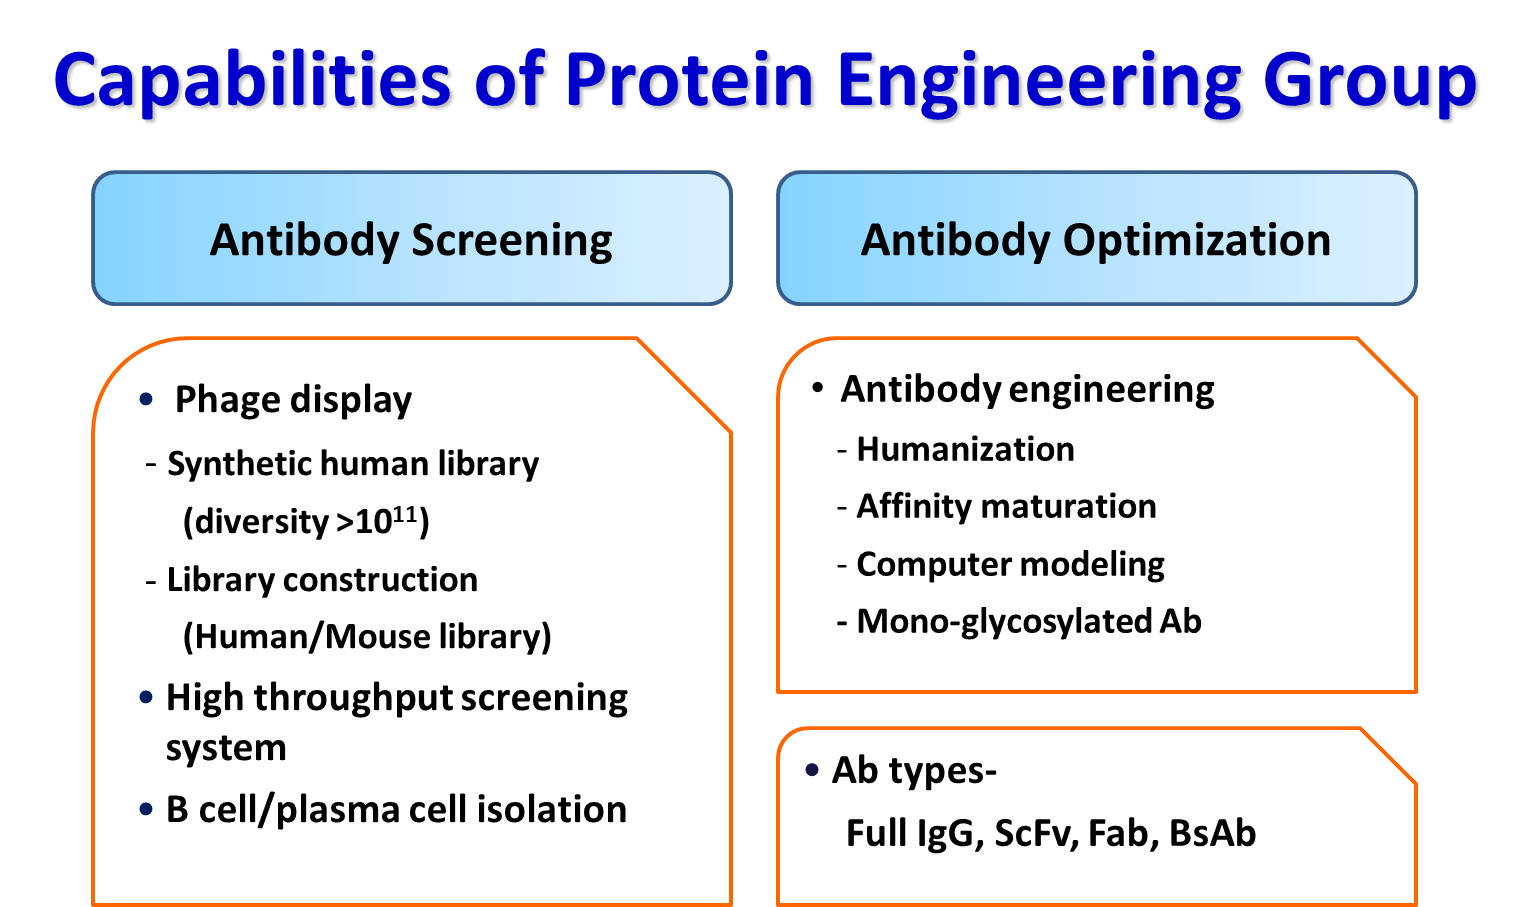 蛋白基因工程可協助進行抗體篩選、最佳化等作業